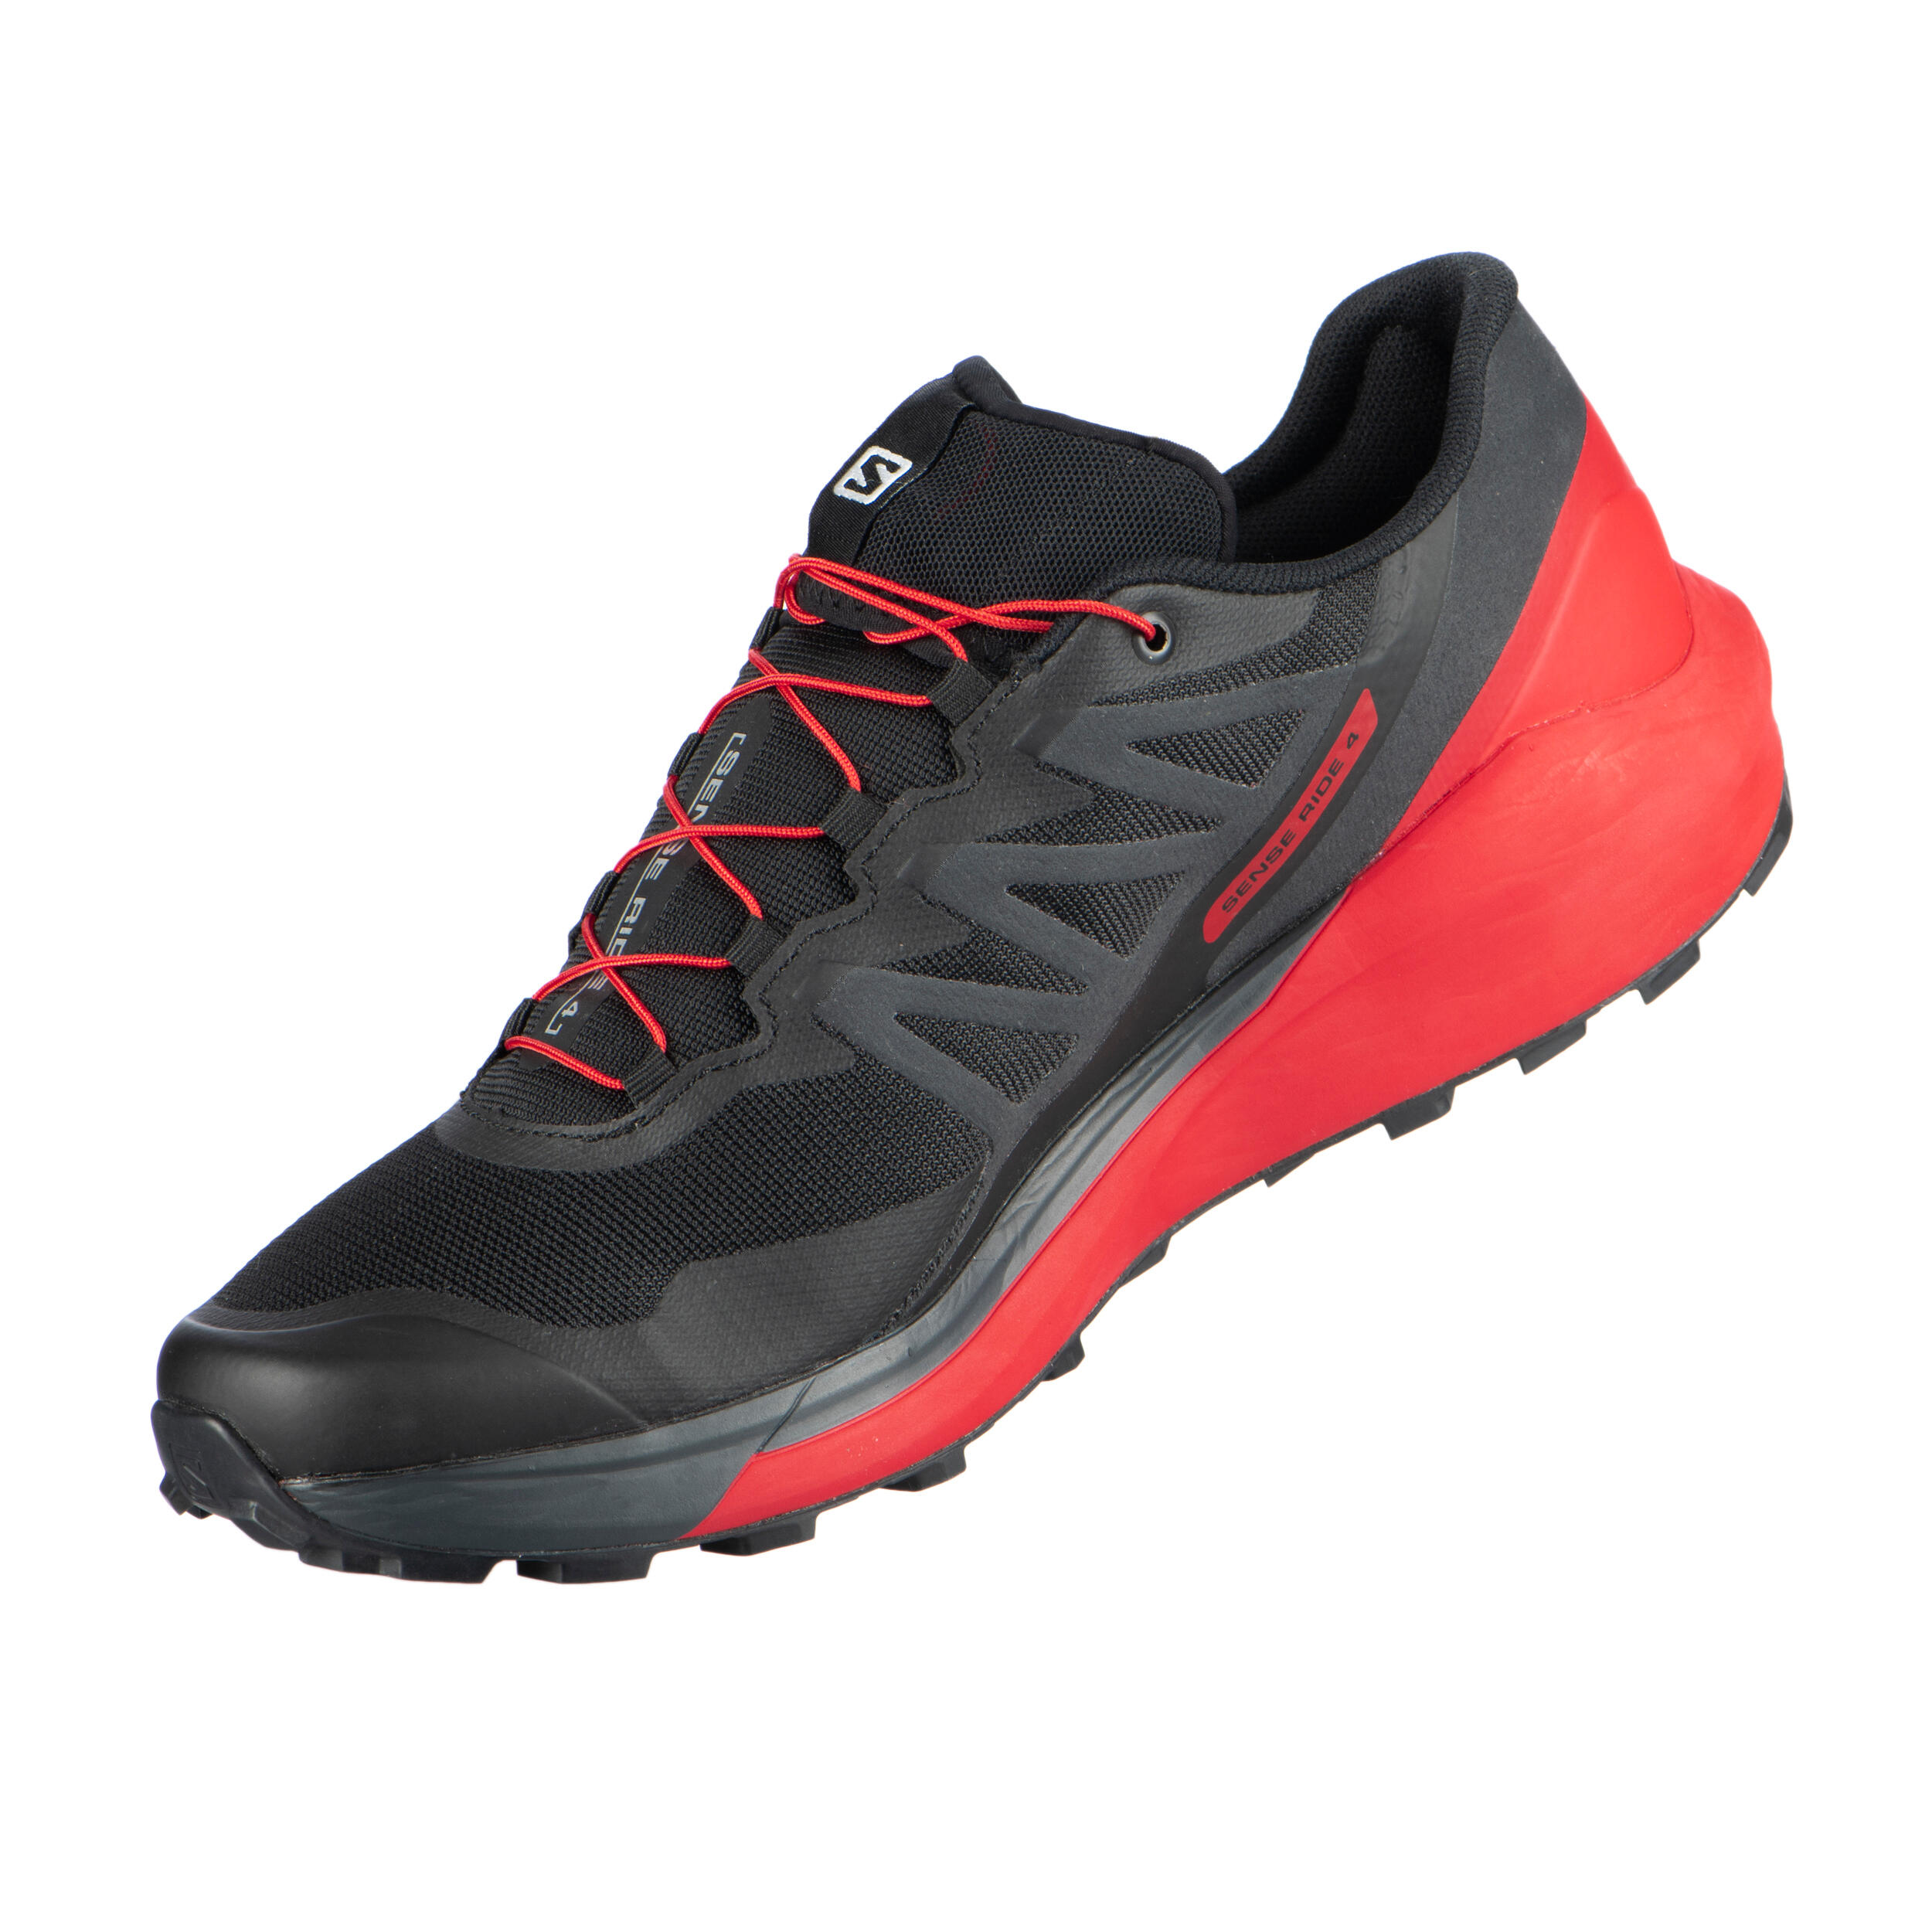 Trail Running Shoe Salomon Sense Ride 4 - black red 6/12